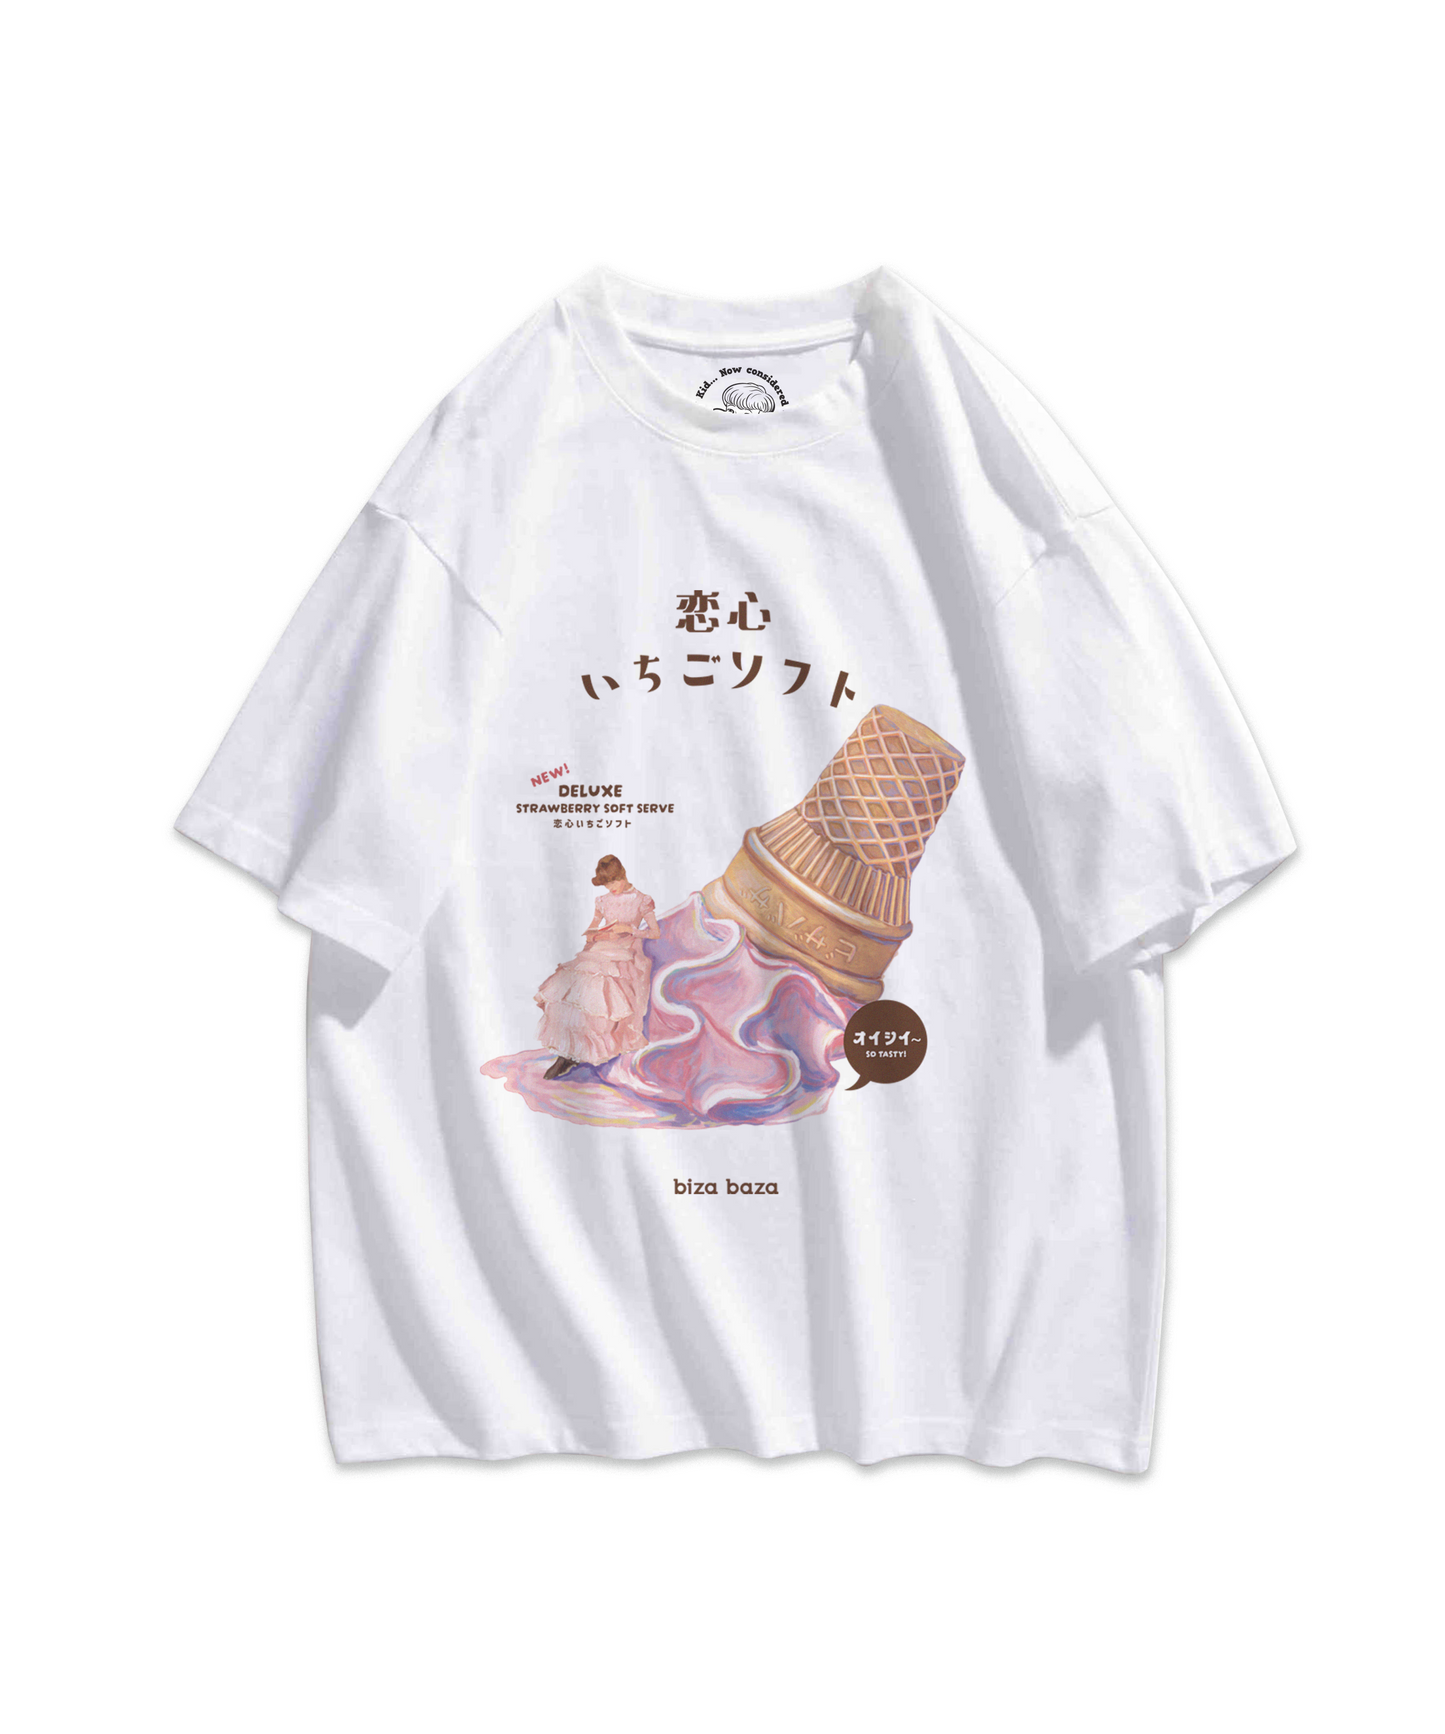 Kissaten Retro T-shirt Series